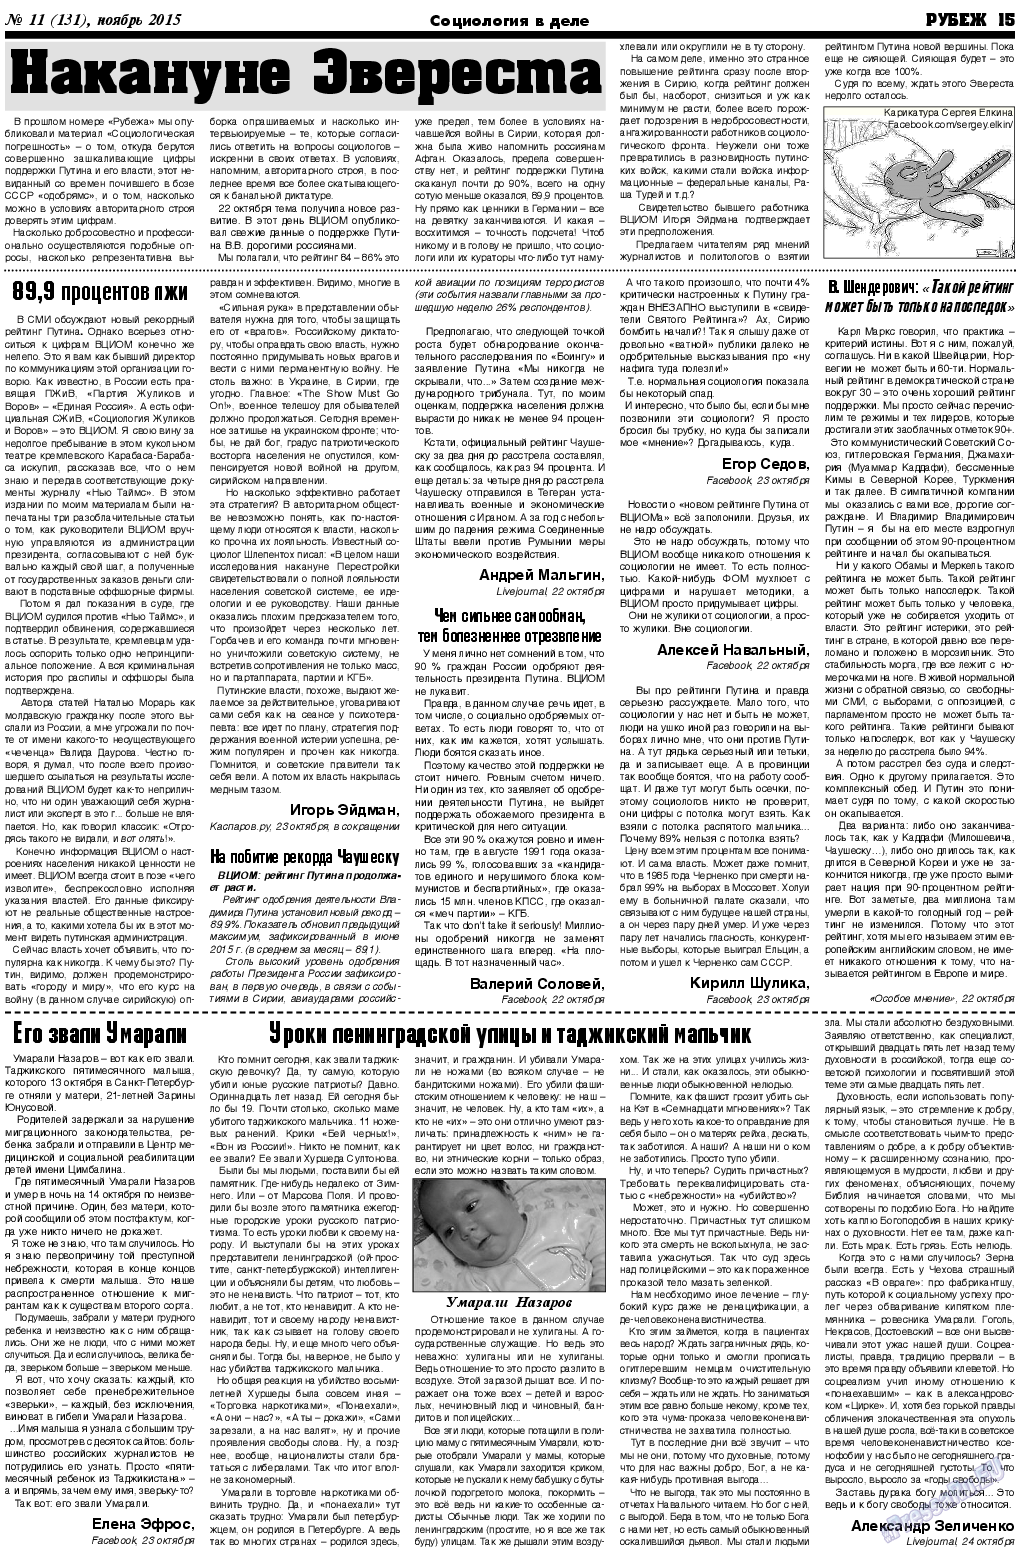 Рубеж (газета). 2015 год, номер 11, стр. 15